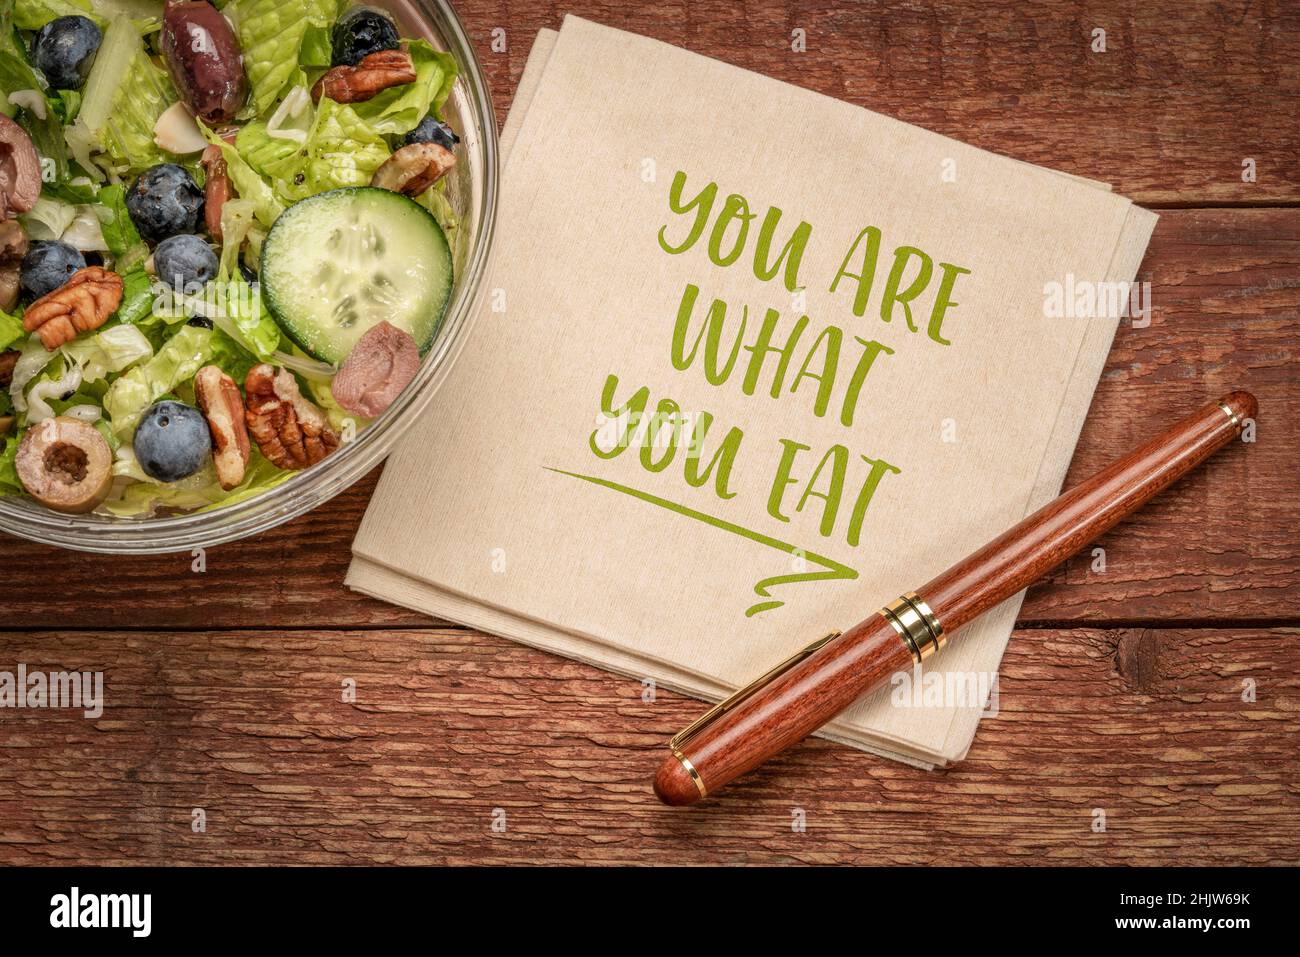 Gesundes Essen und Lifestyle-Konzept - Sie sind, was zu essen Erinnerungsworte handgeschrieben auf einer Serviette mit einer Schüssel Salat Stockfoto